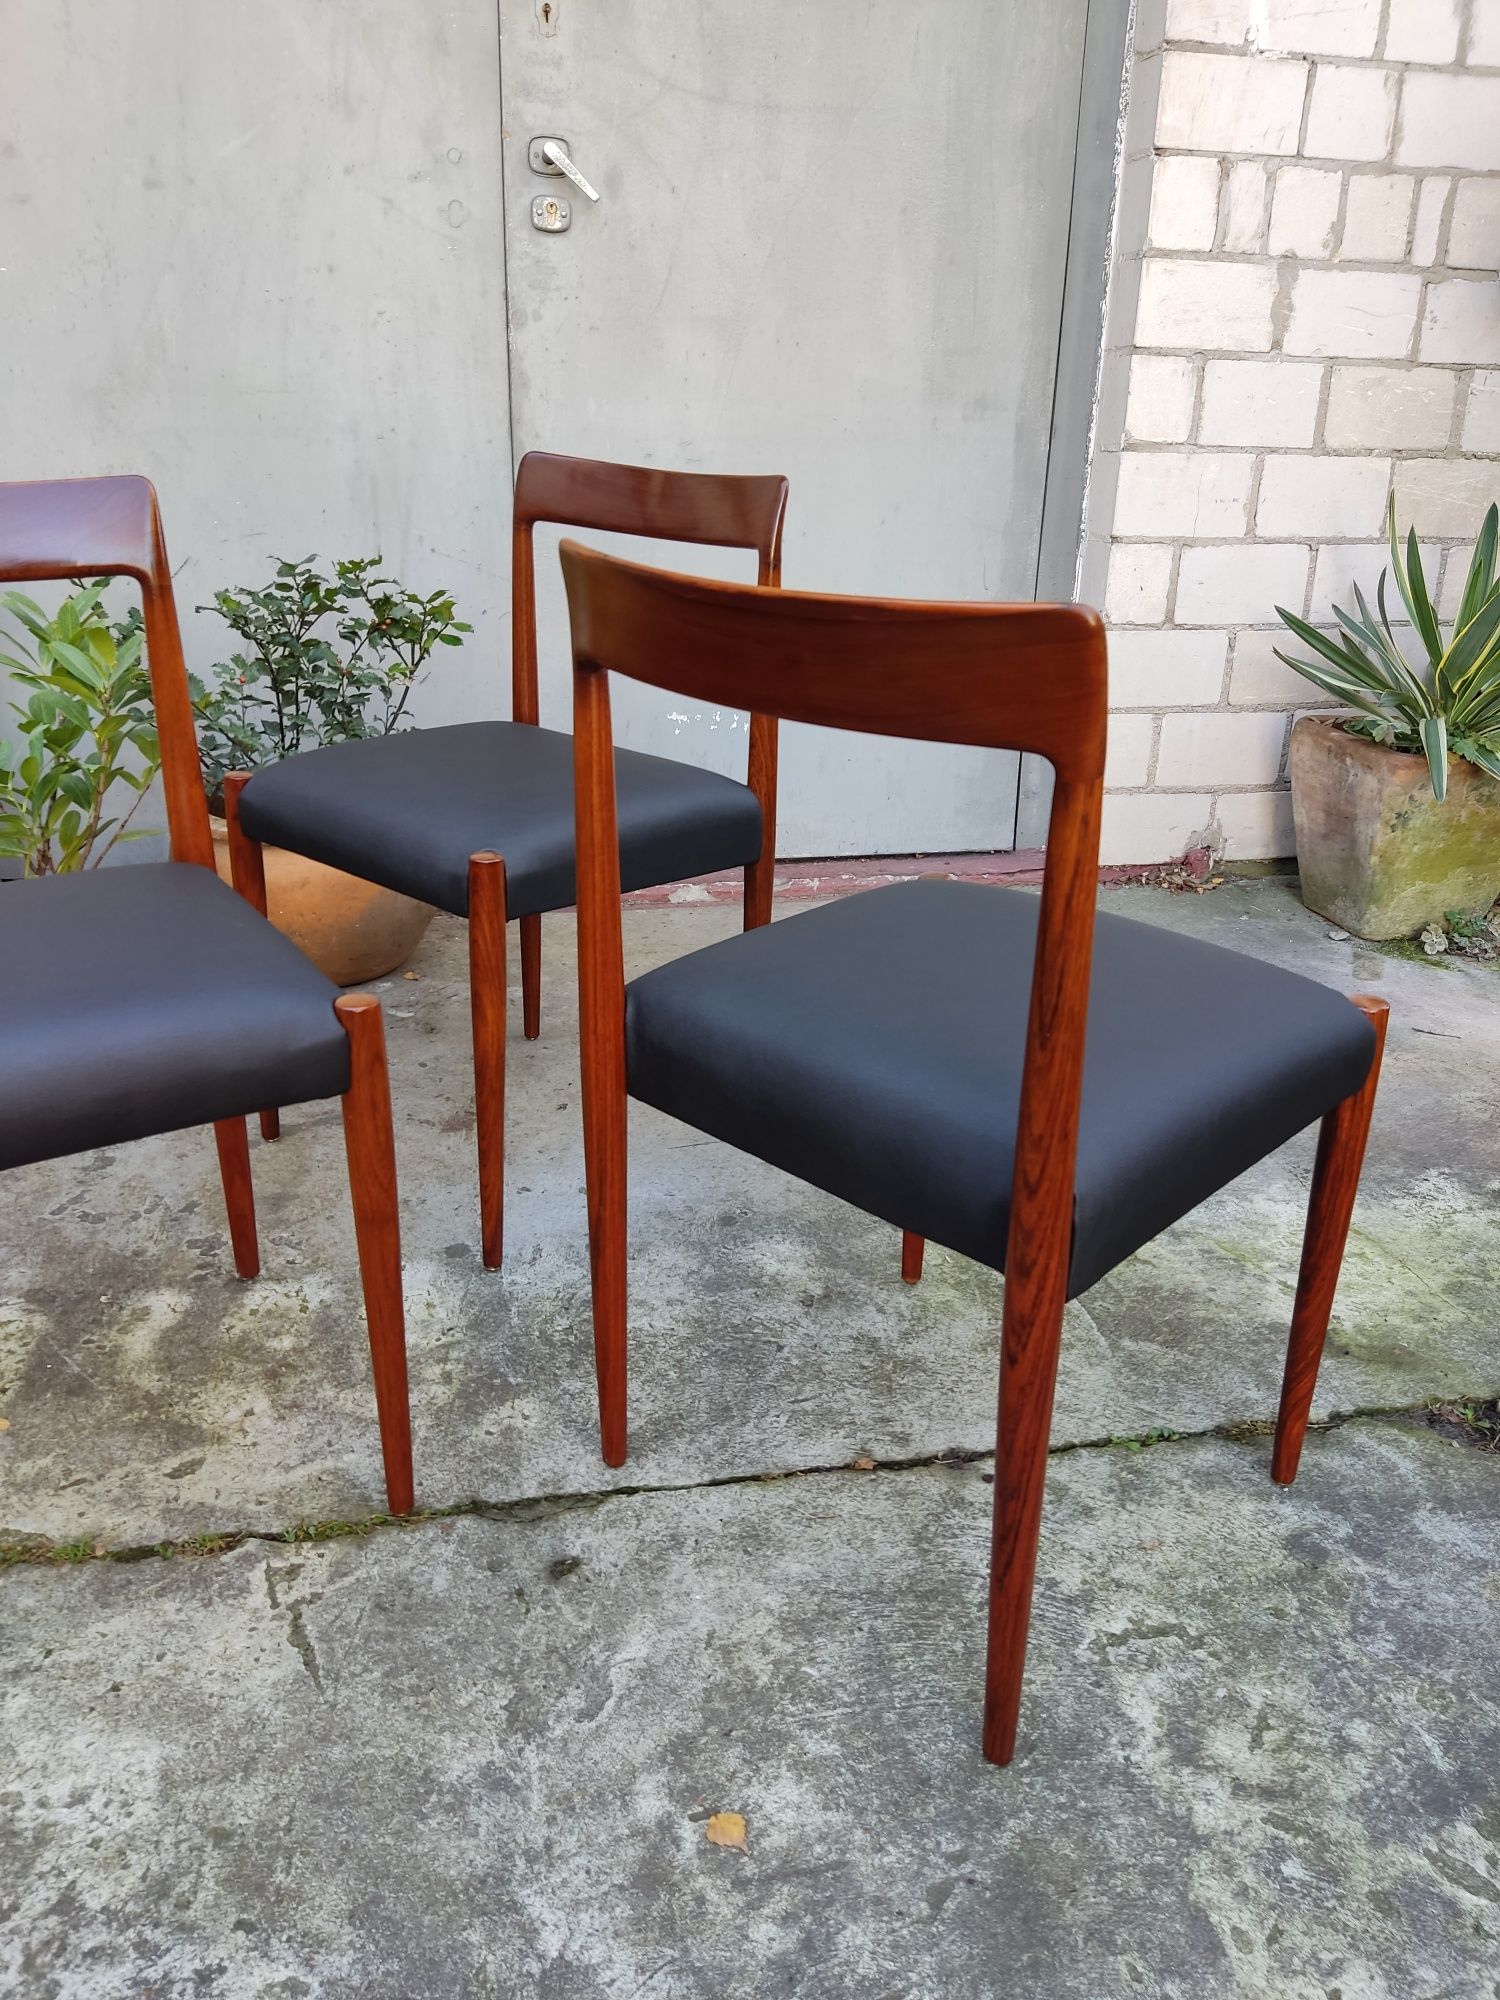 Zestaw trzech krzeseł tekowych Lübke lata 60 te Niemcy vintage design